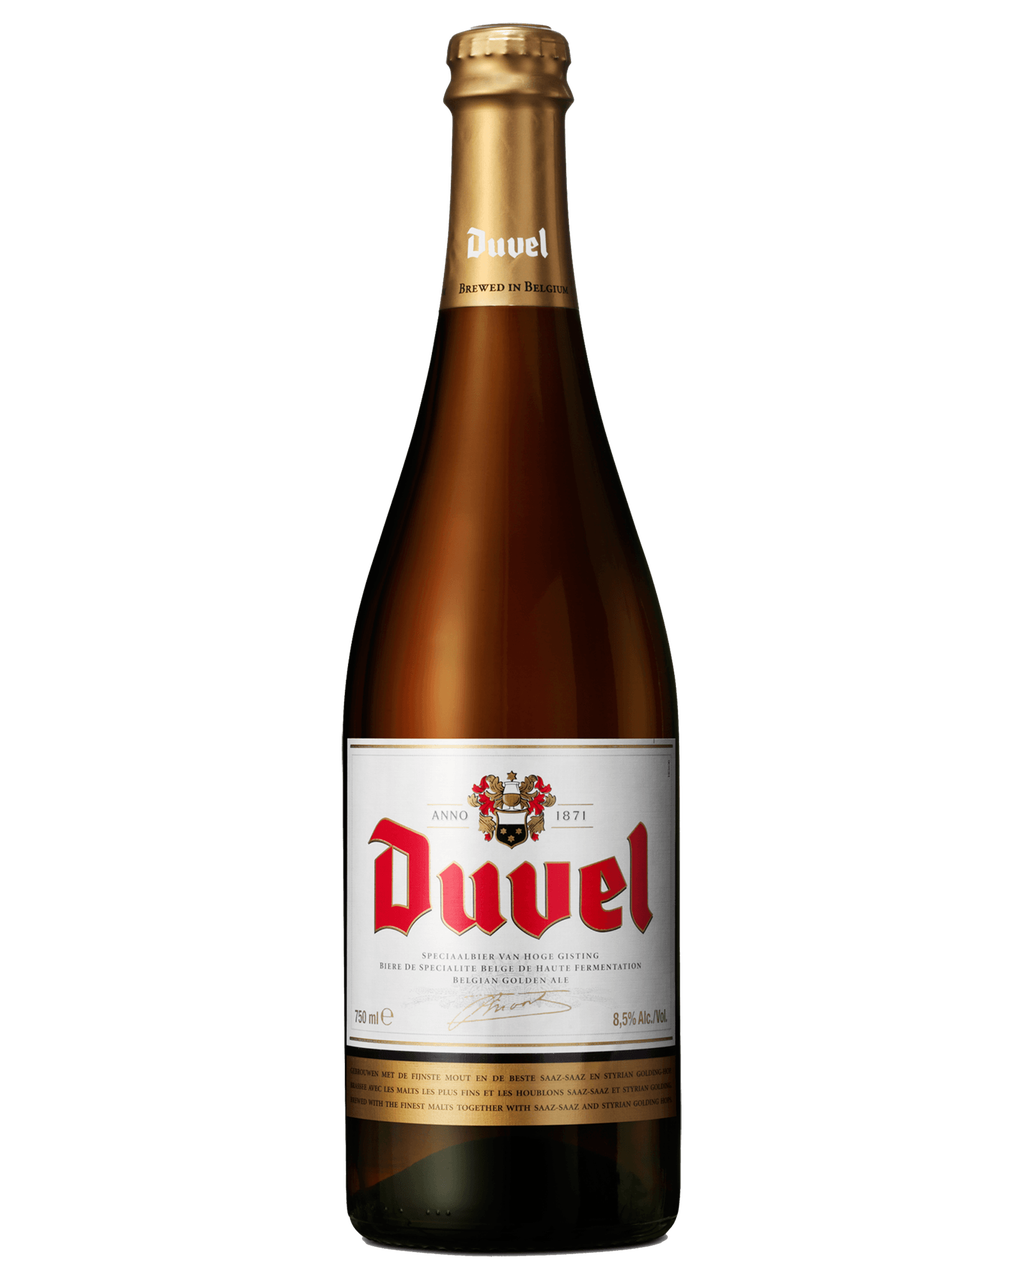 Duvel Bottle Background PNG Image